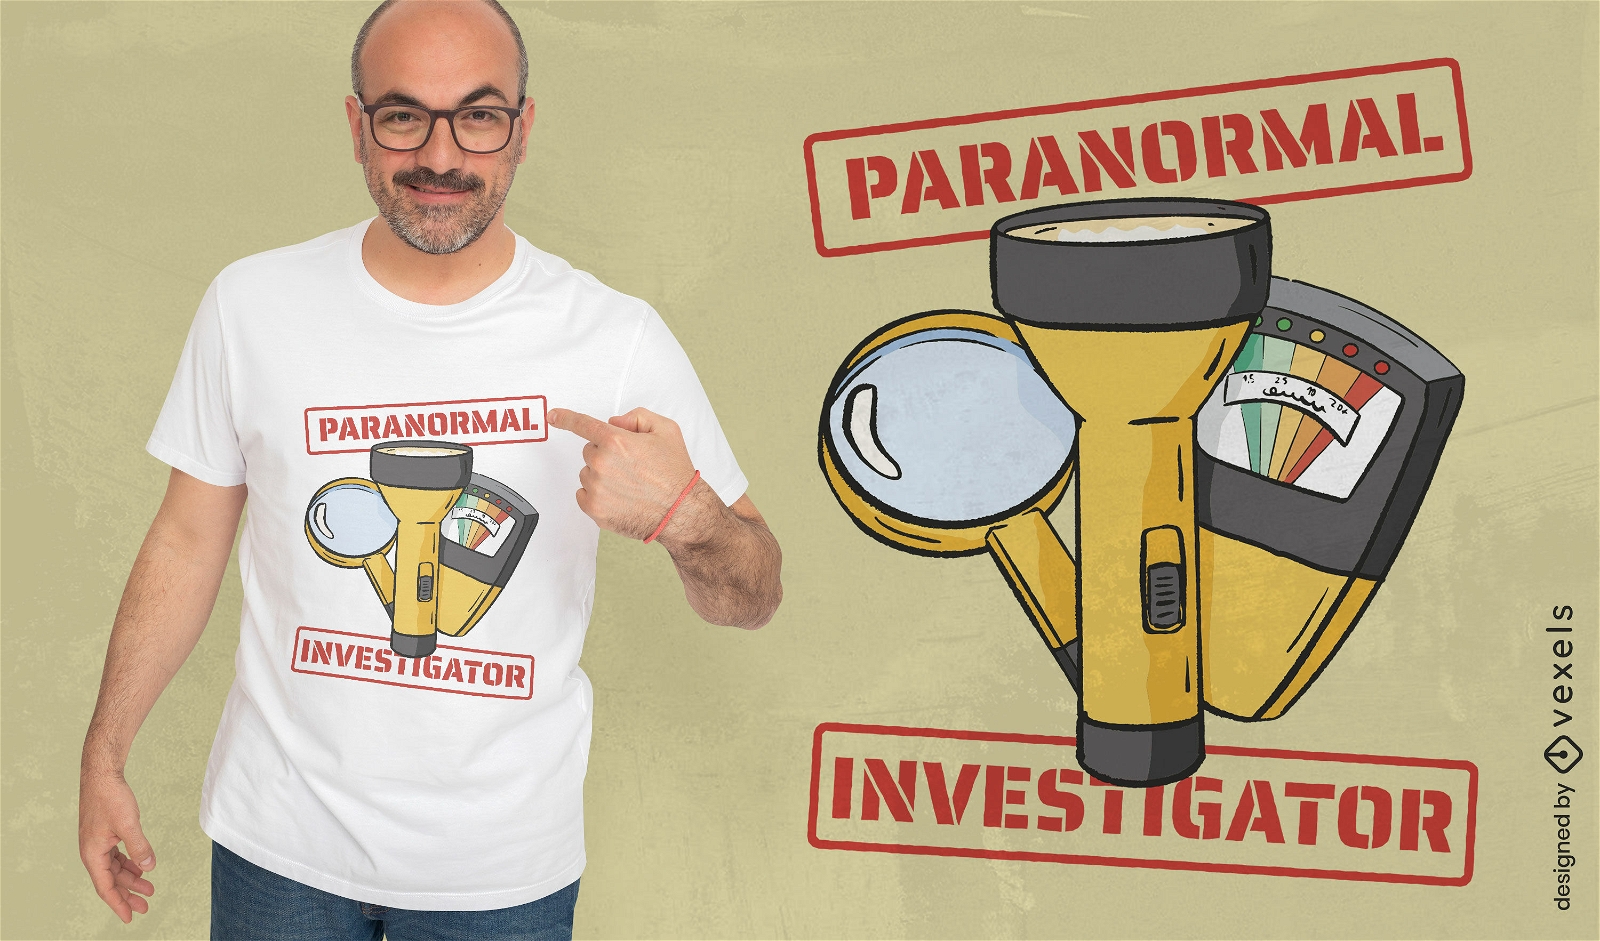 Paranormal investigator tools t-shirt design